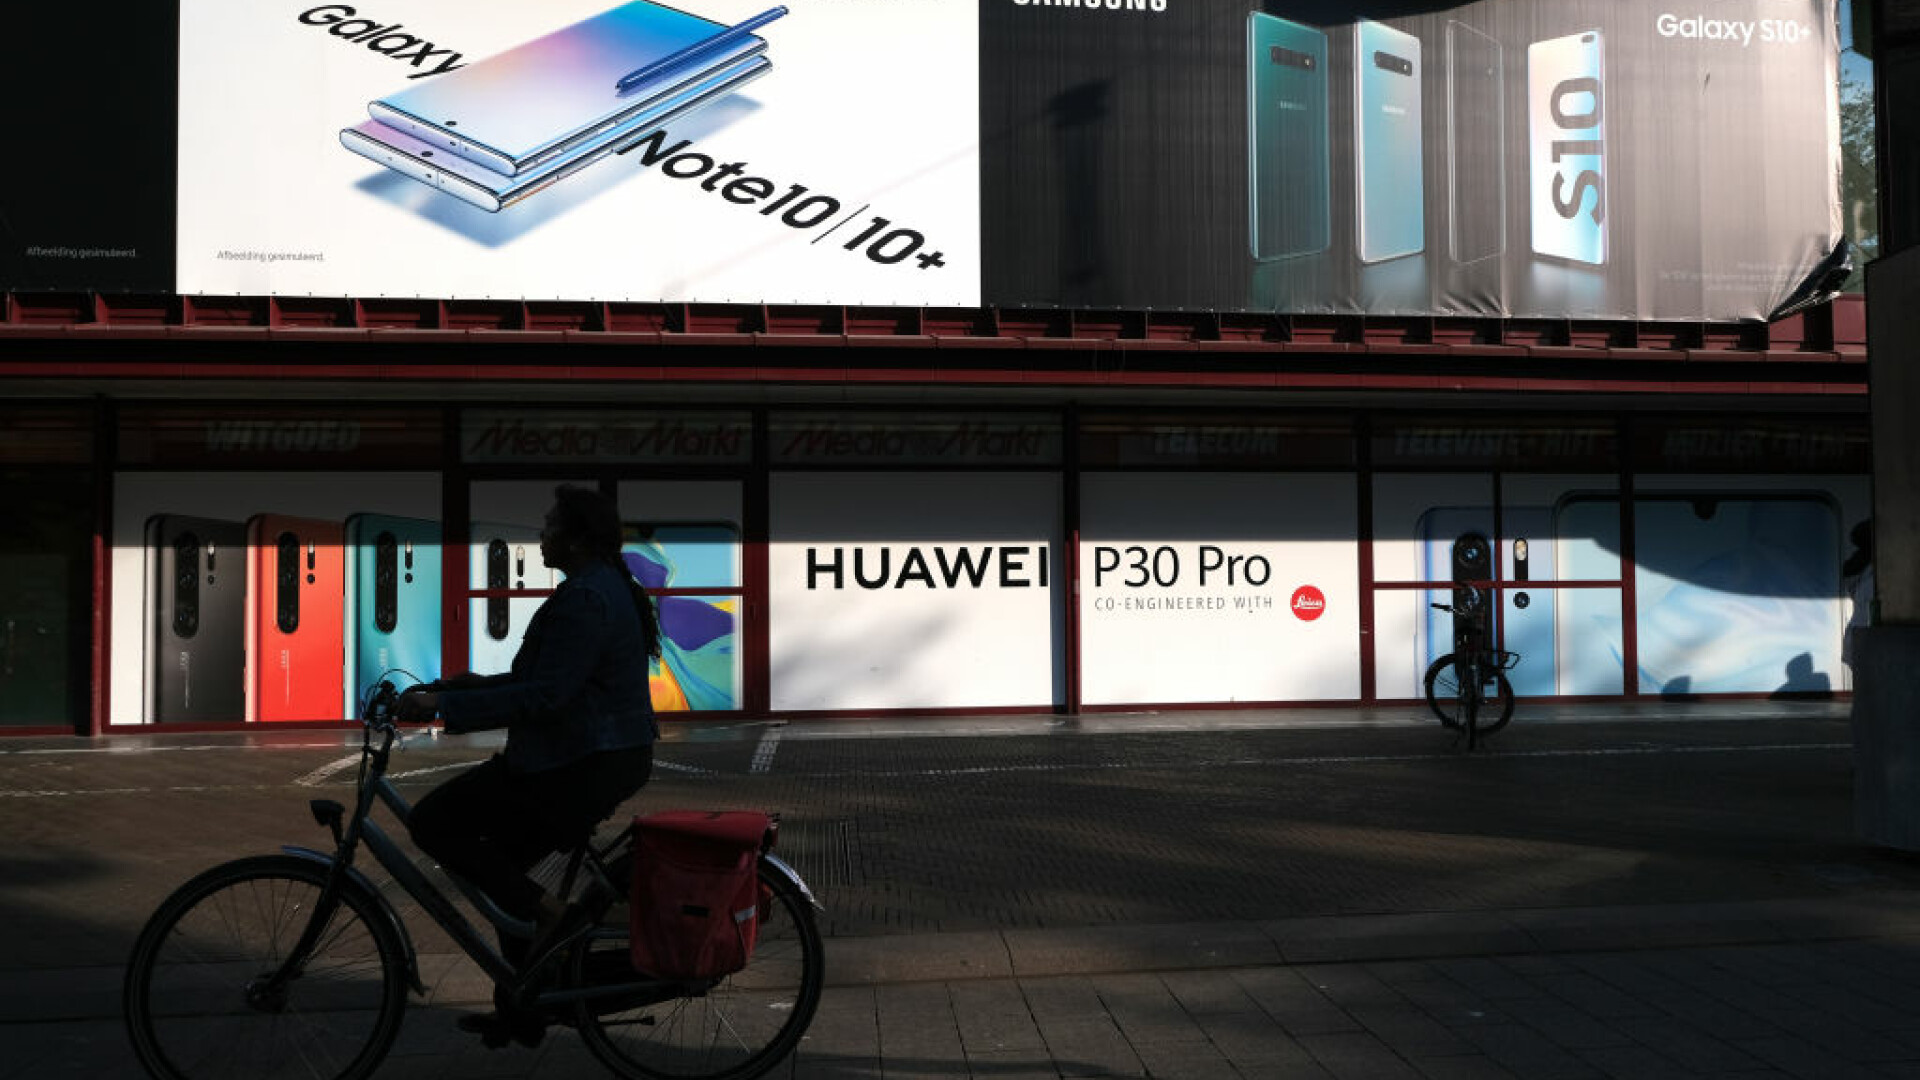 Huawei a depășit Samsung la vânzări și a devenit noul lider global pe piața telefoanelor inteligente